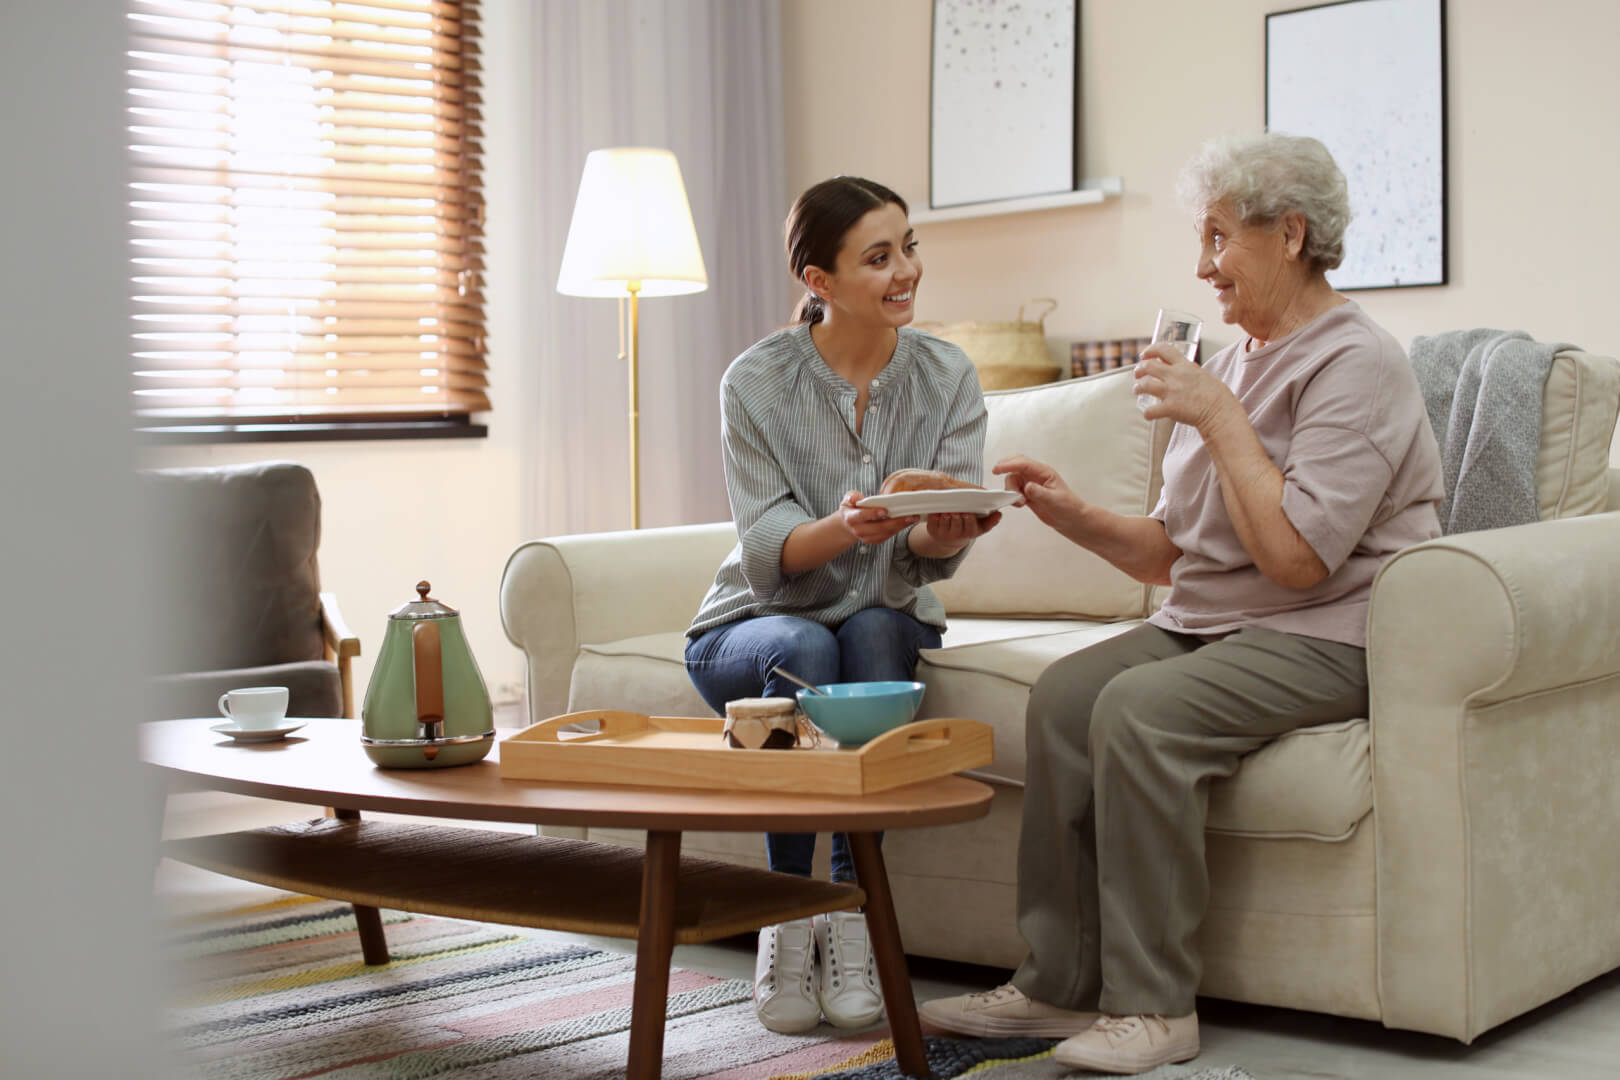 En la ilustración están dos personas, una mujer joven a la izquierda y una señora de edad avanzada, sentadas en un sofá, mientras hablan y la chica joven le ofrece a la persona mayor un plato de comida, en un desayuno